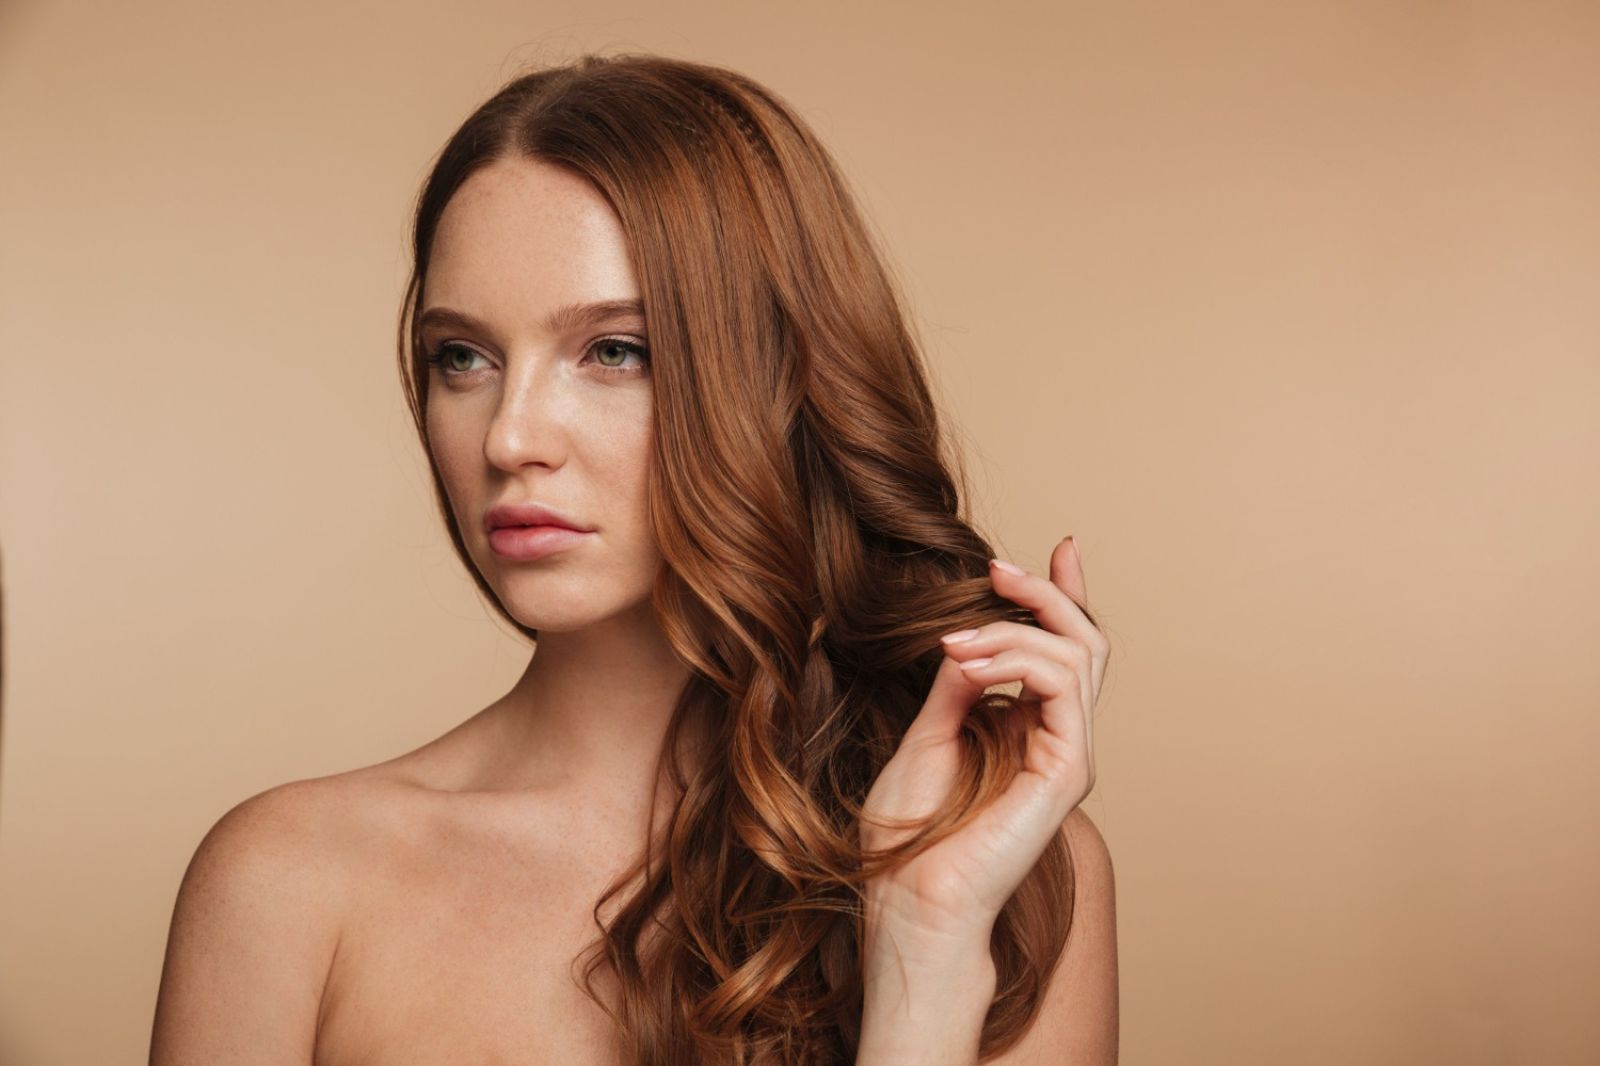 Как укрепить тонкие ослабленные волосы и сделать их гуще? | Чистая линия